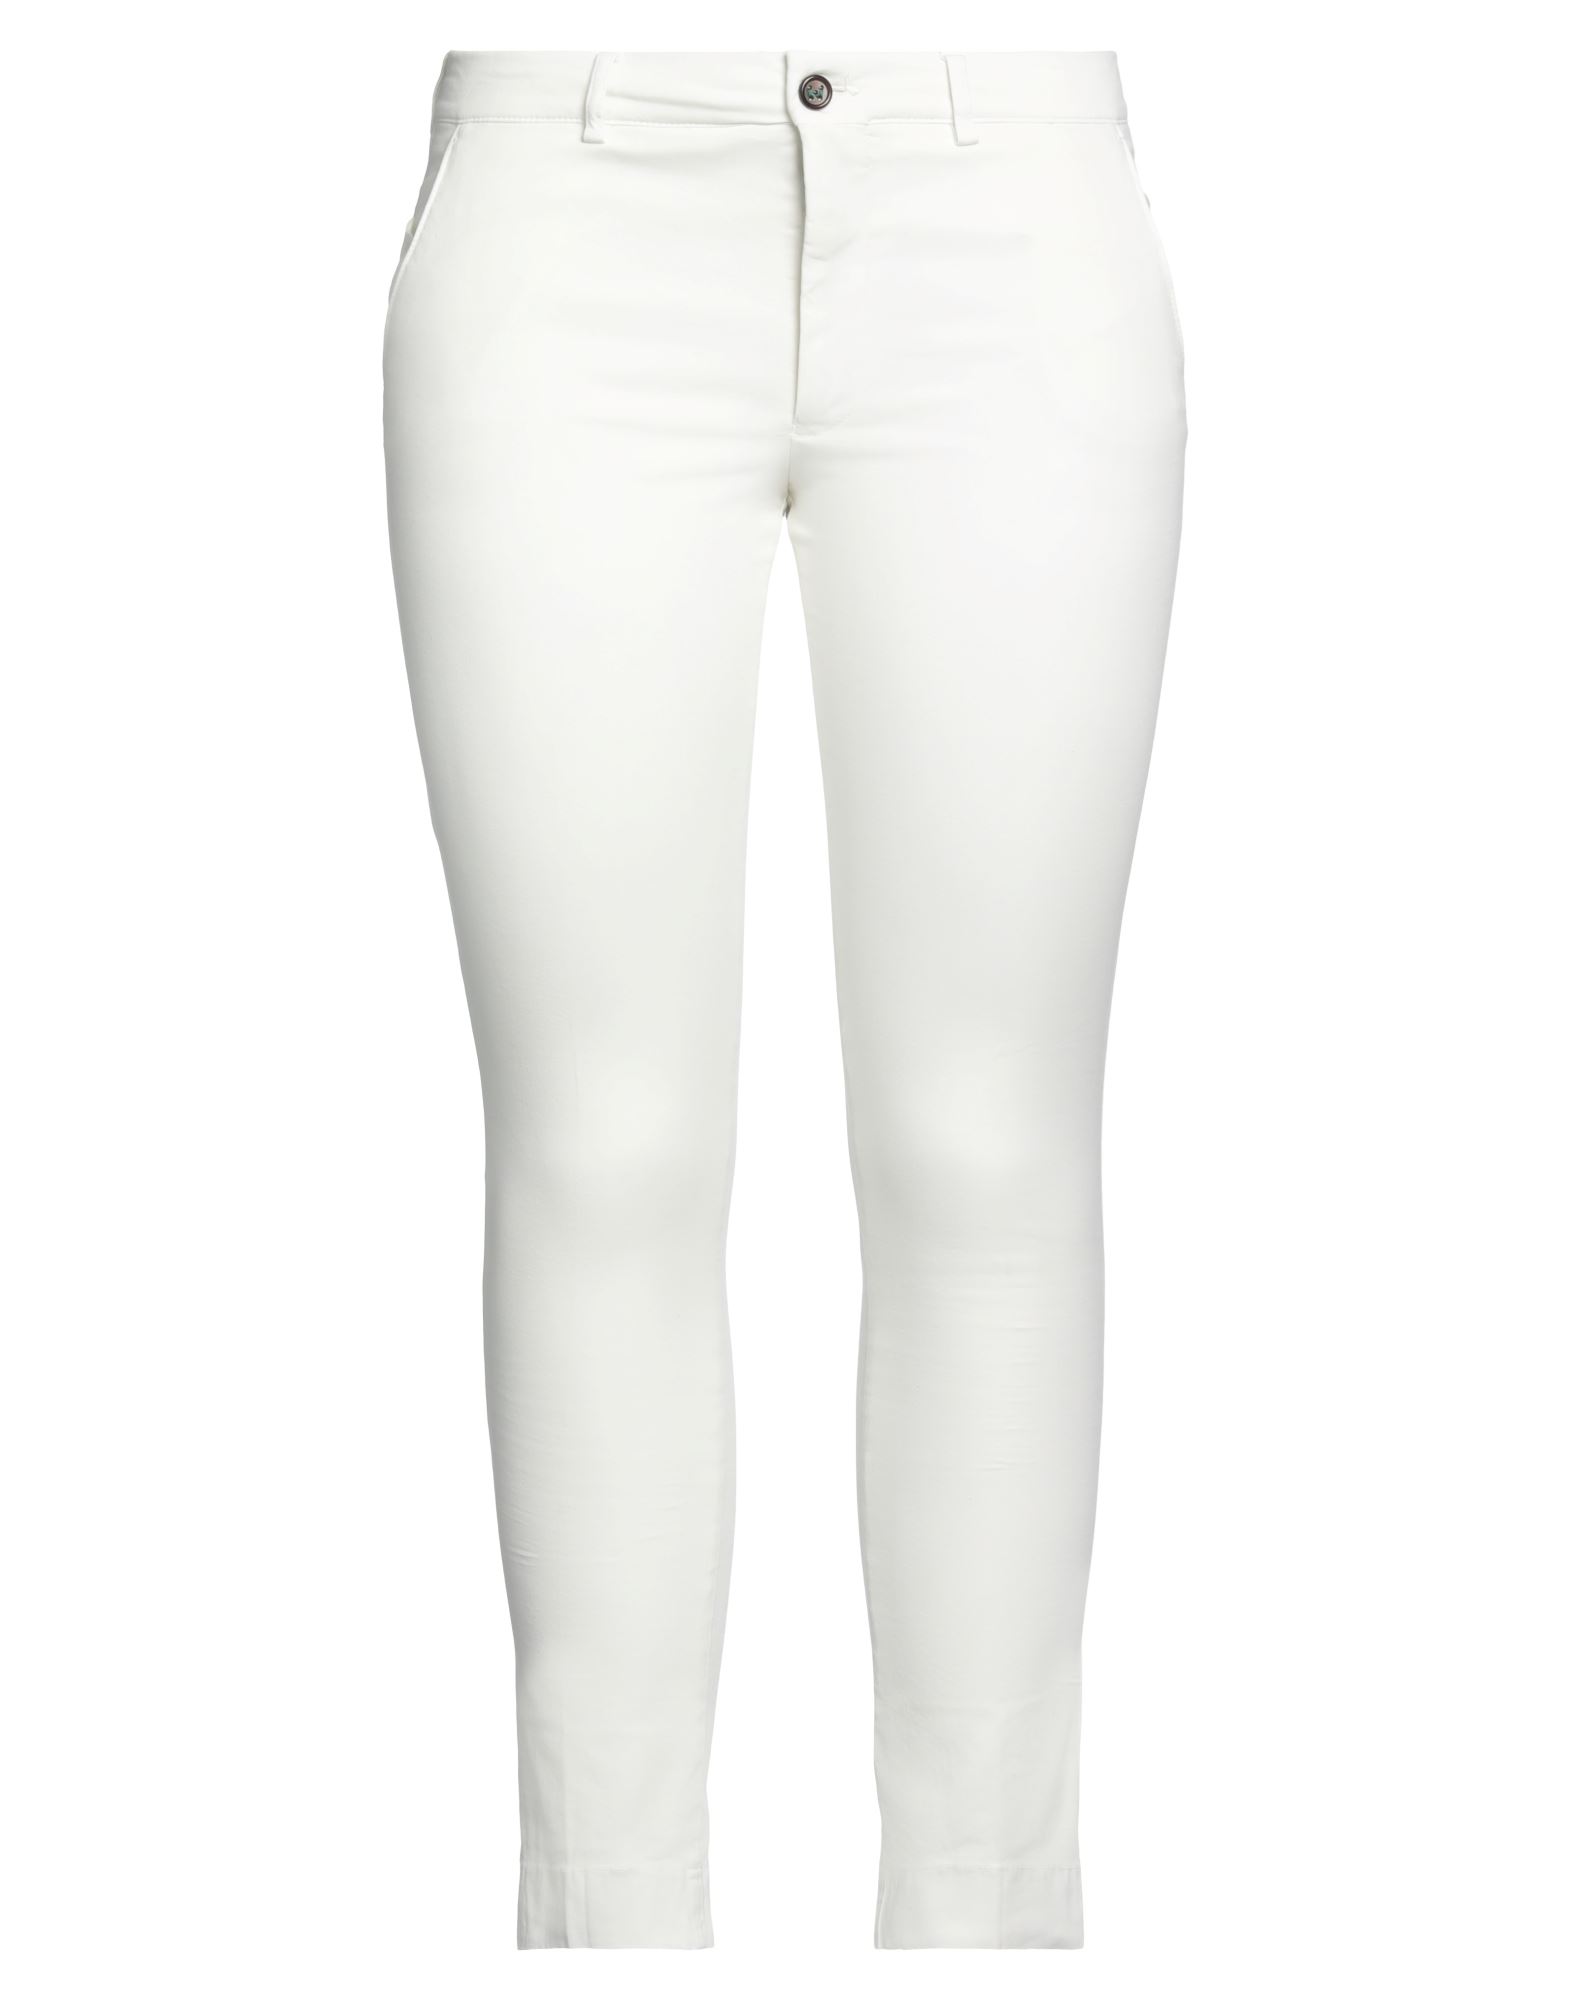 Berwich Woman Pants White Size 8 Cotton, Lyocell, Elastane